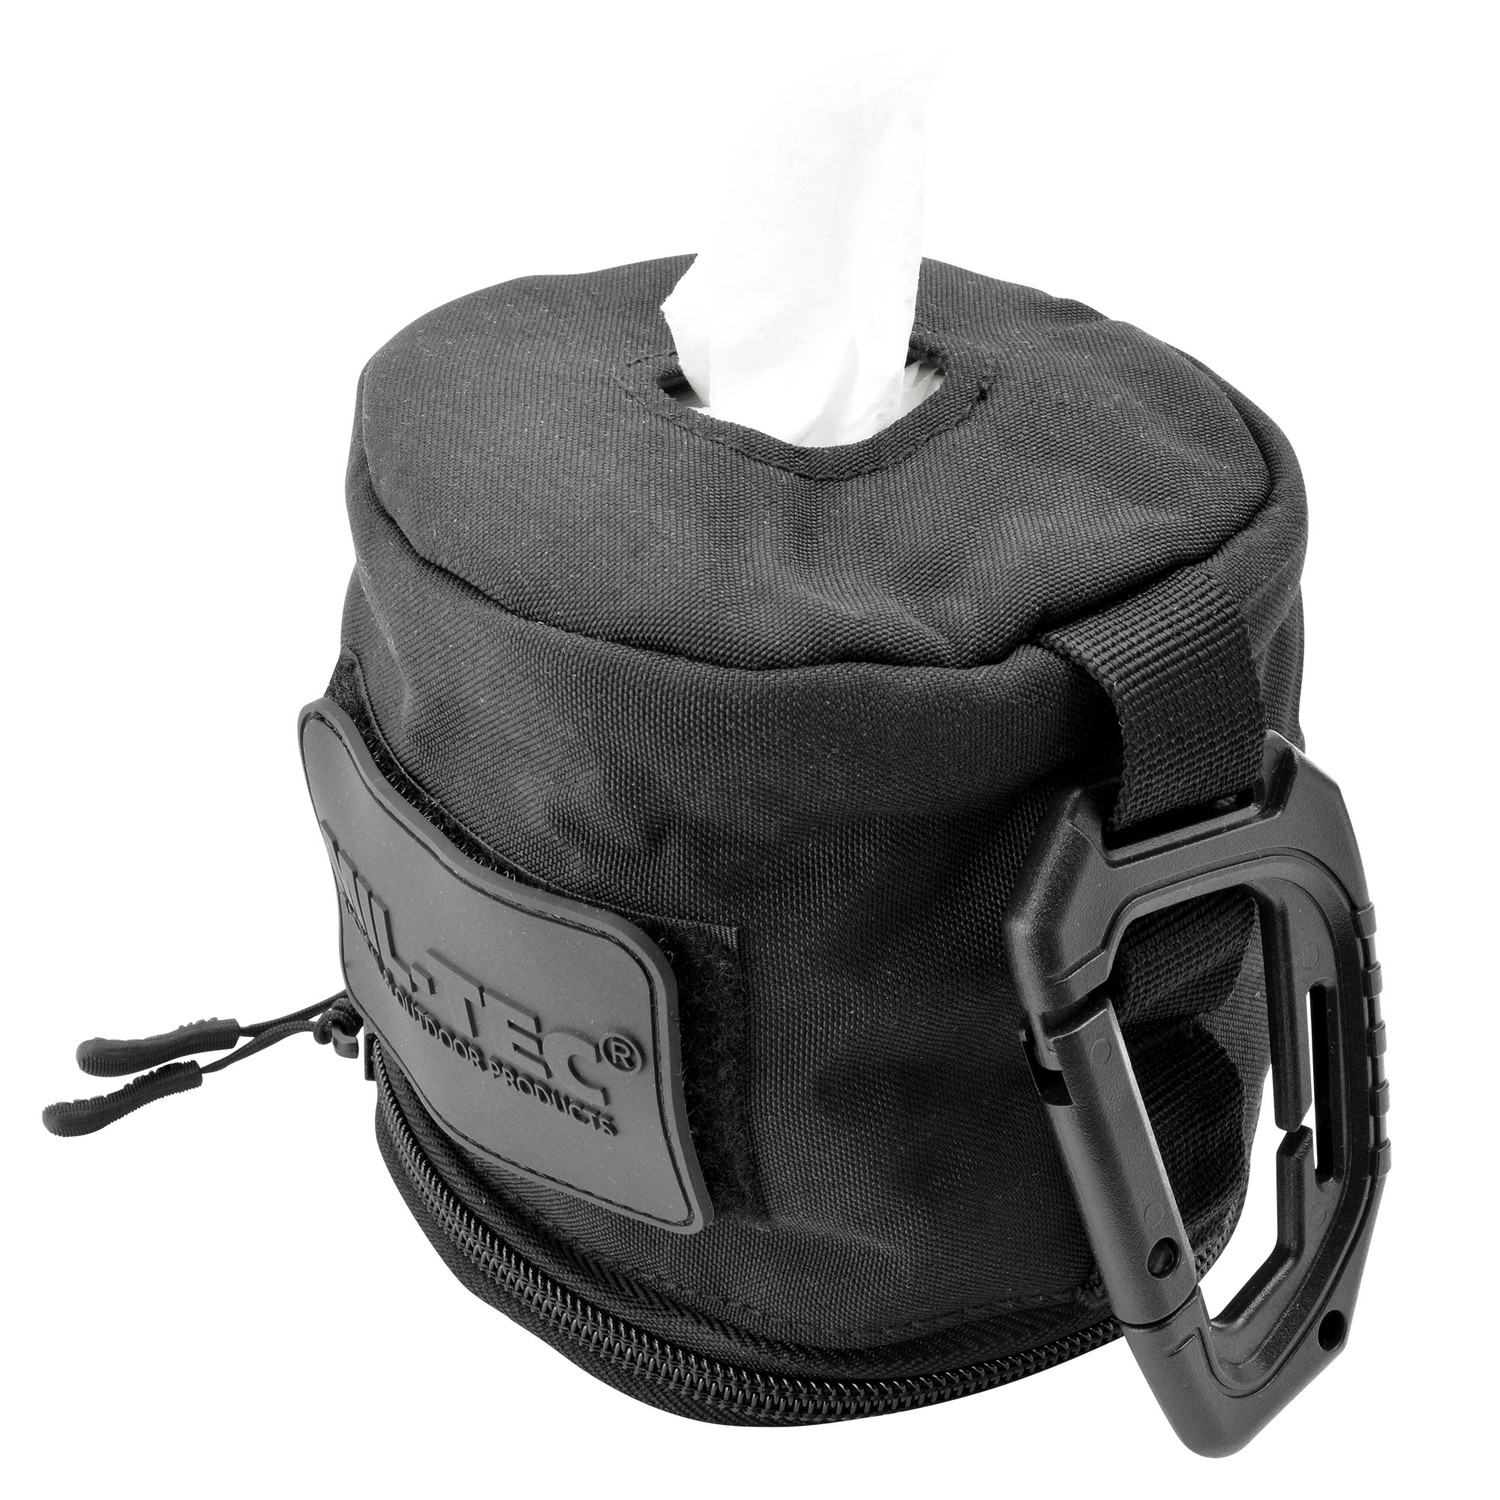 Tasche für Toilettenpapier in Schwarz mit Reißverschluss, Karabiner und Patchfläche